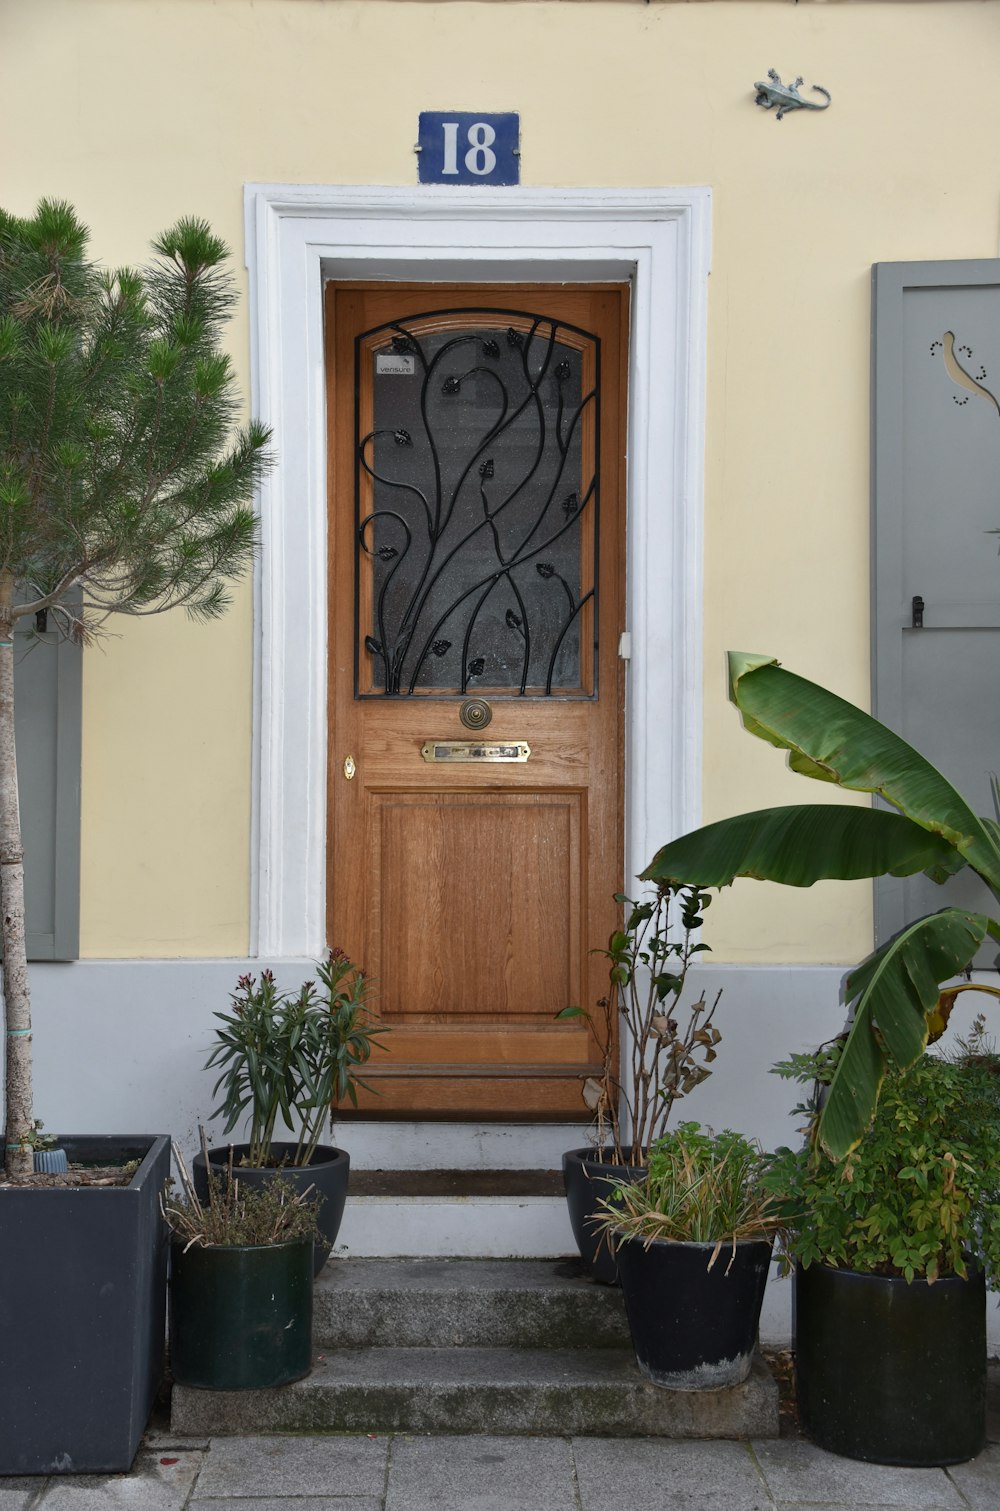 Puerta de madera marrón junto a una planta verde en maceta